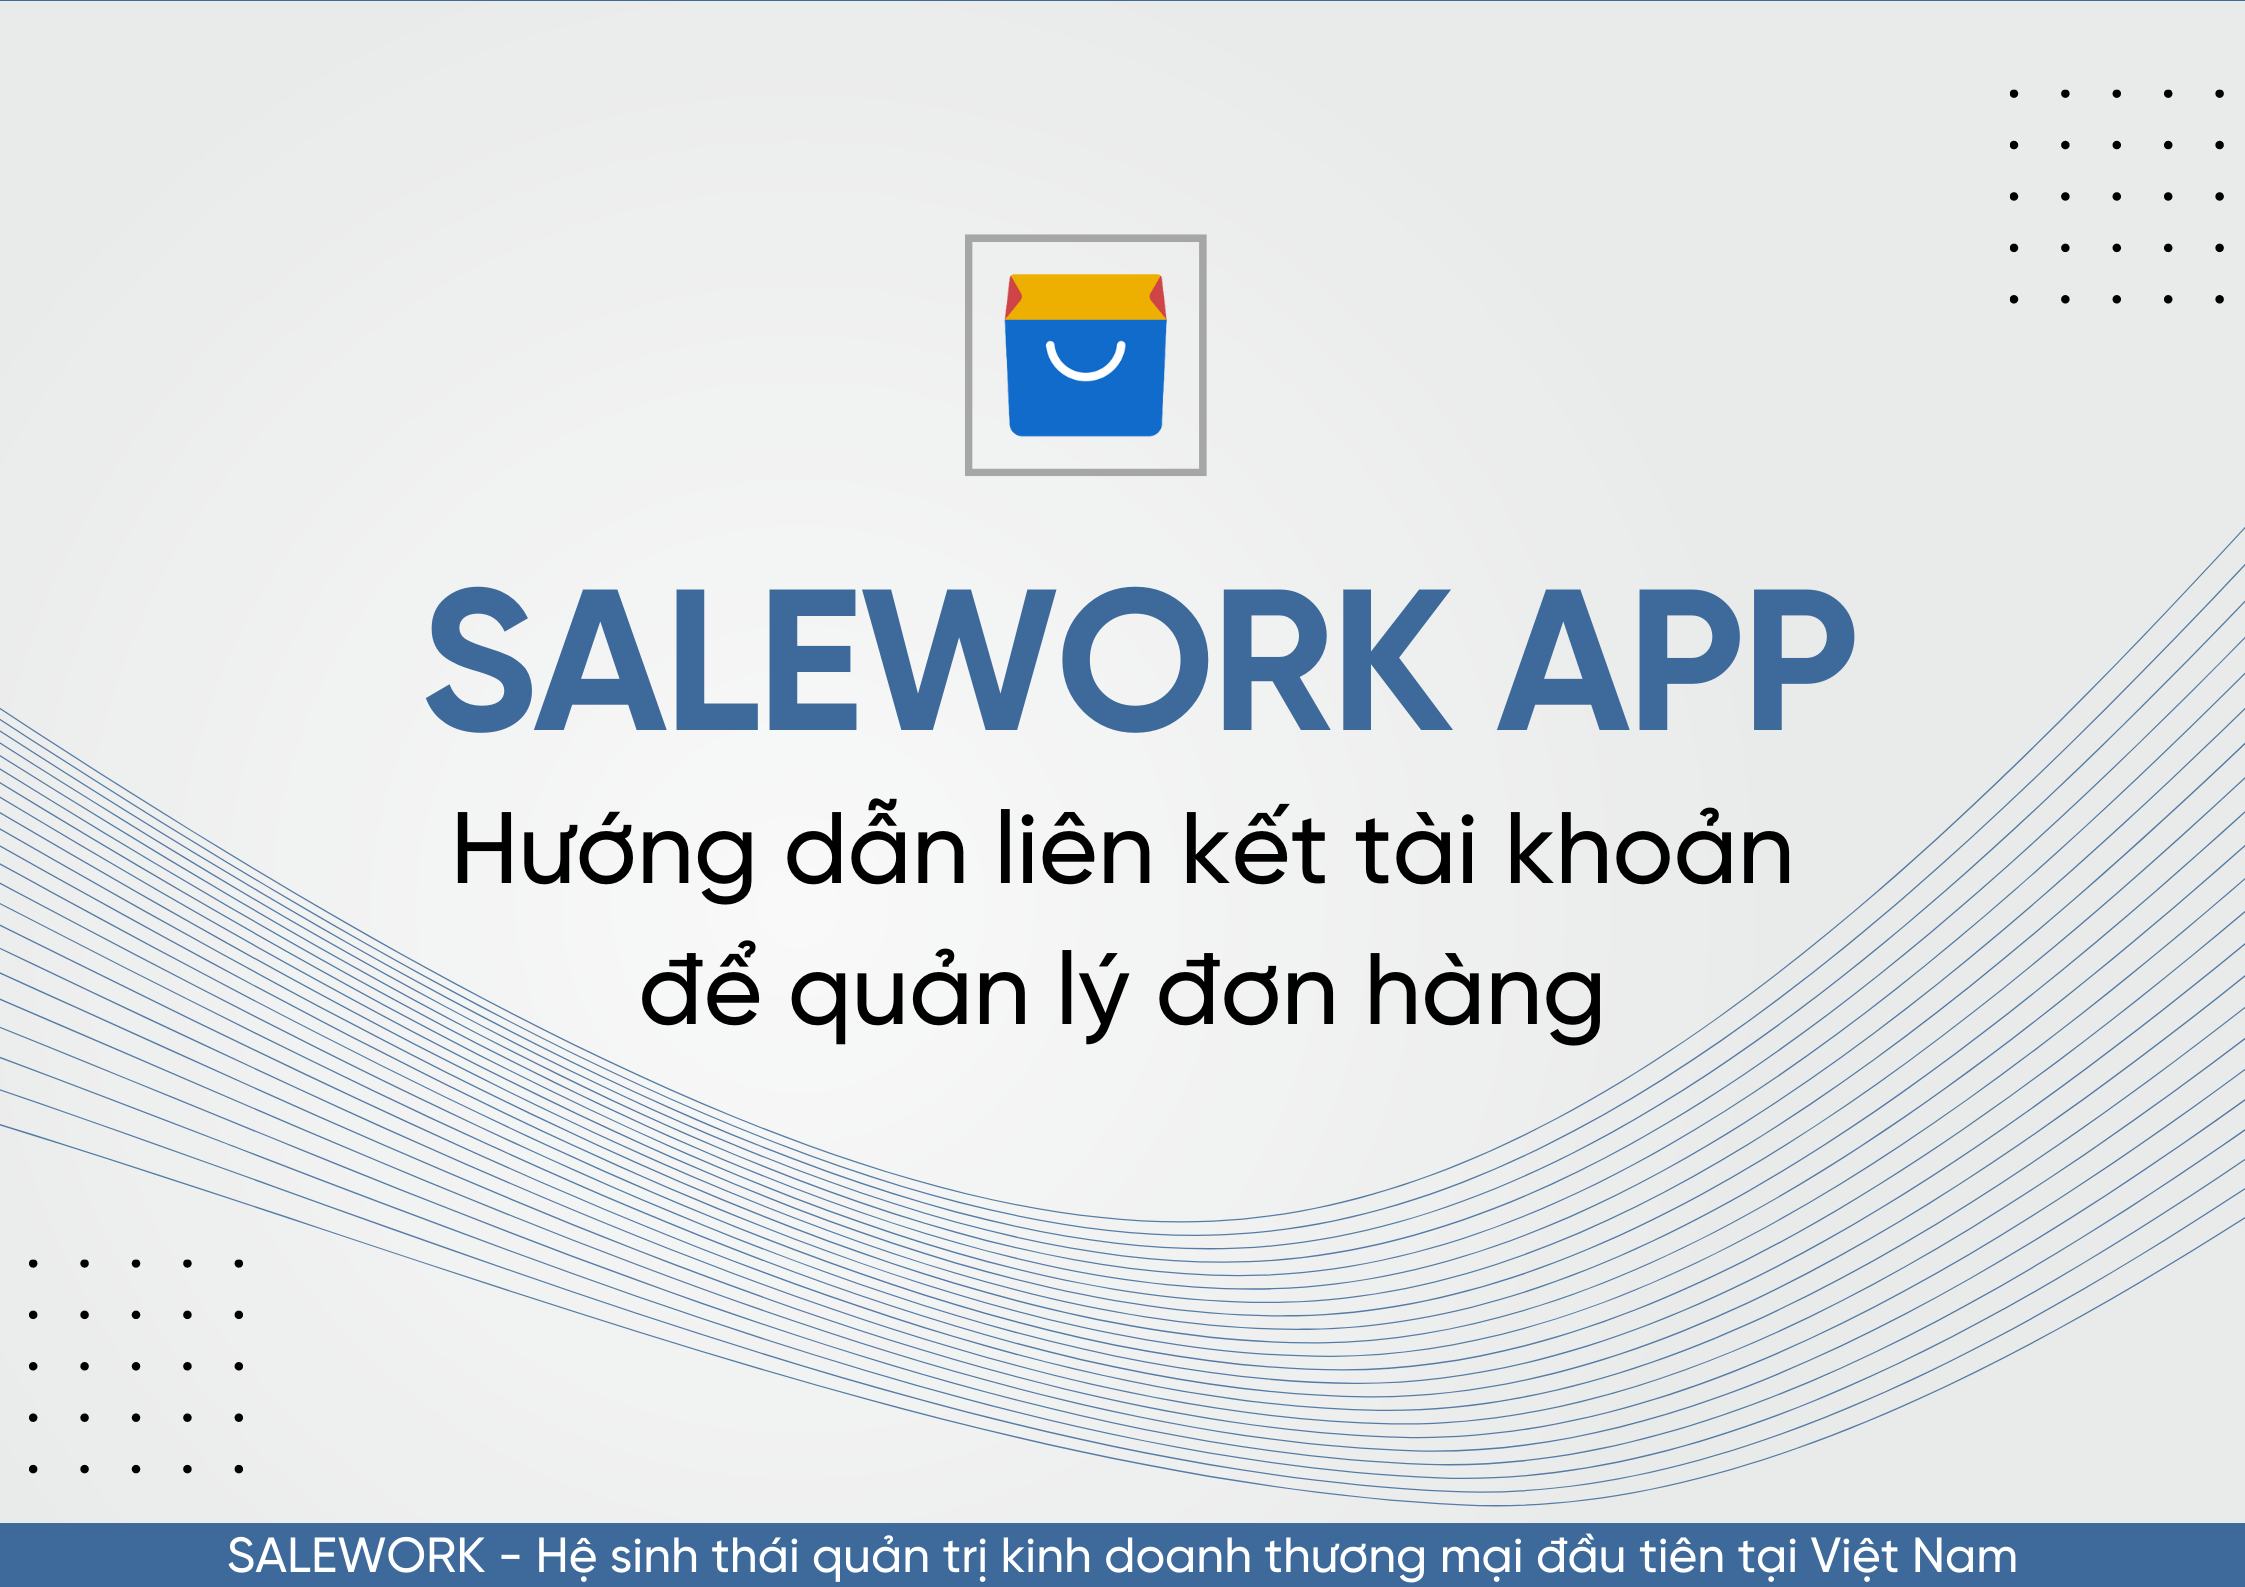 Hướng dẫn liên kết tài khoản để quản lý đơn hàng qua Salework Mobile - 59